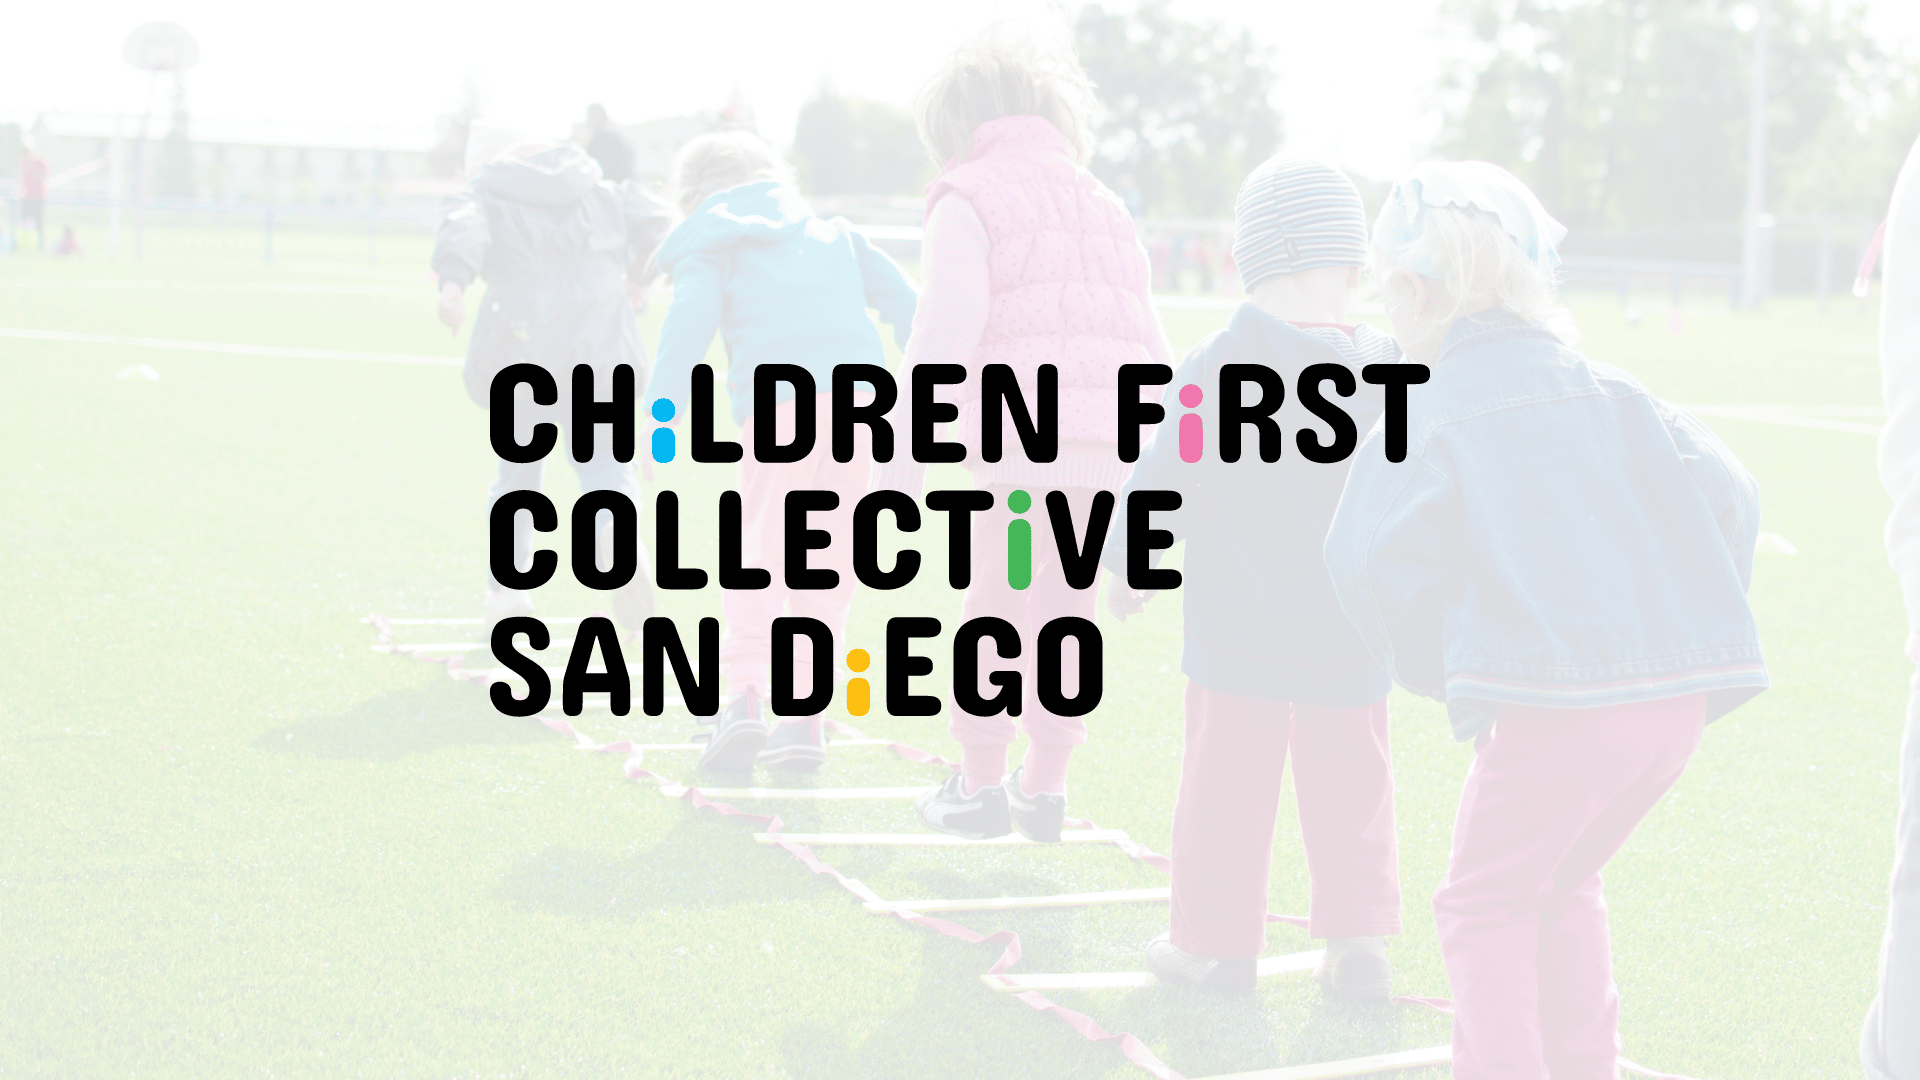 Children First Collective San Diego logo